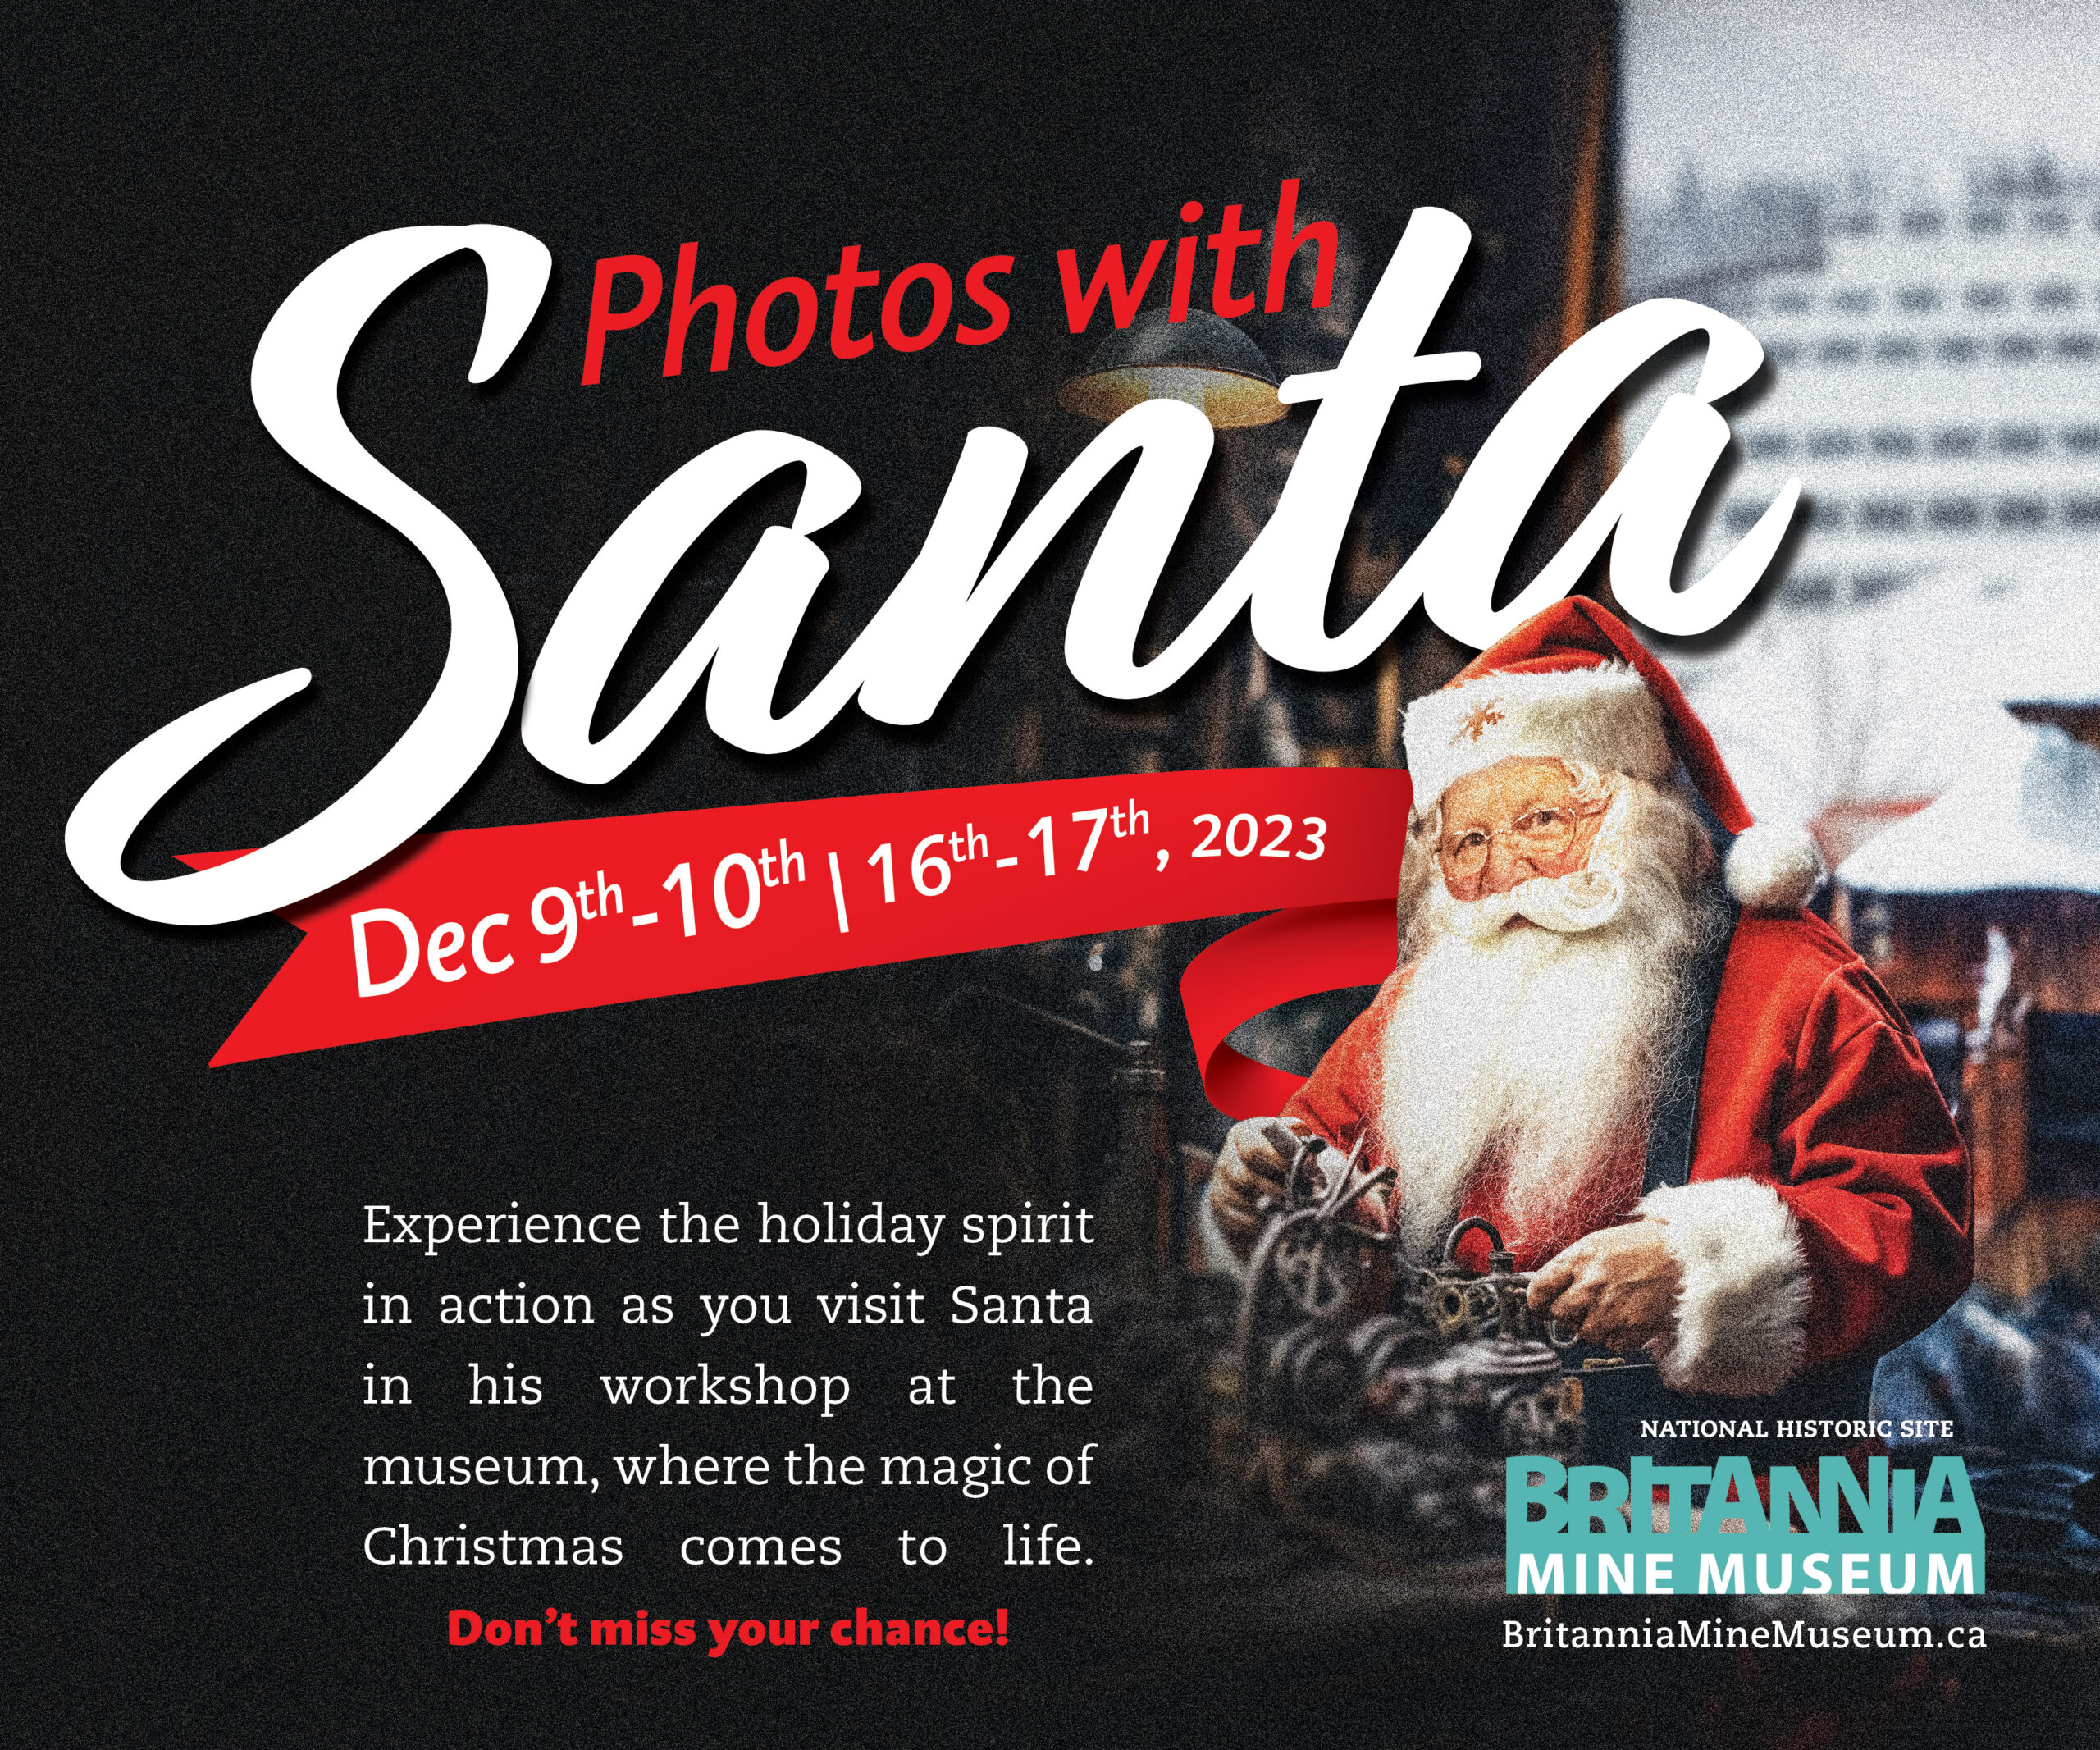 Photos with Santa at Britannia Mine Museum